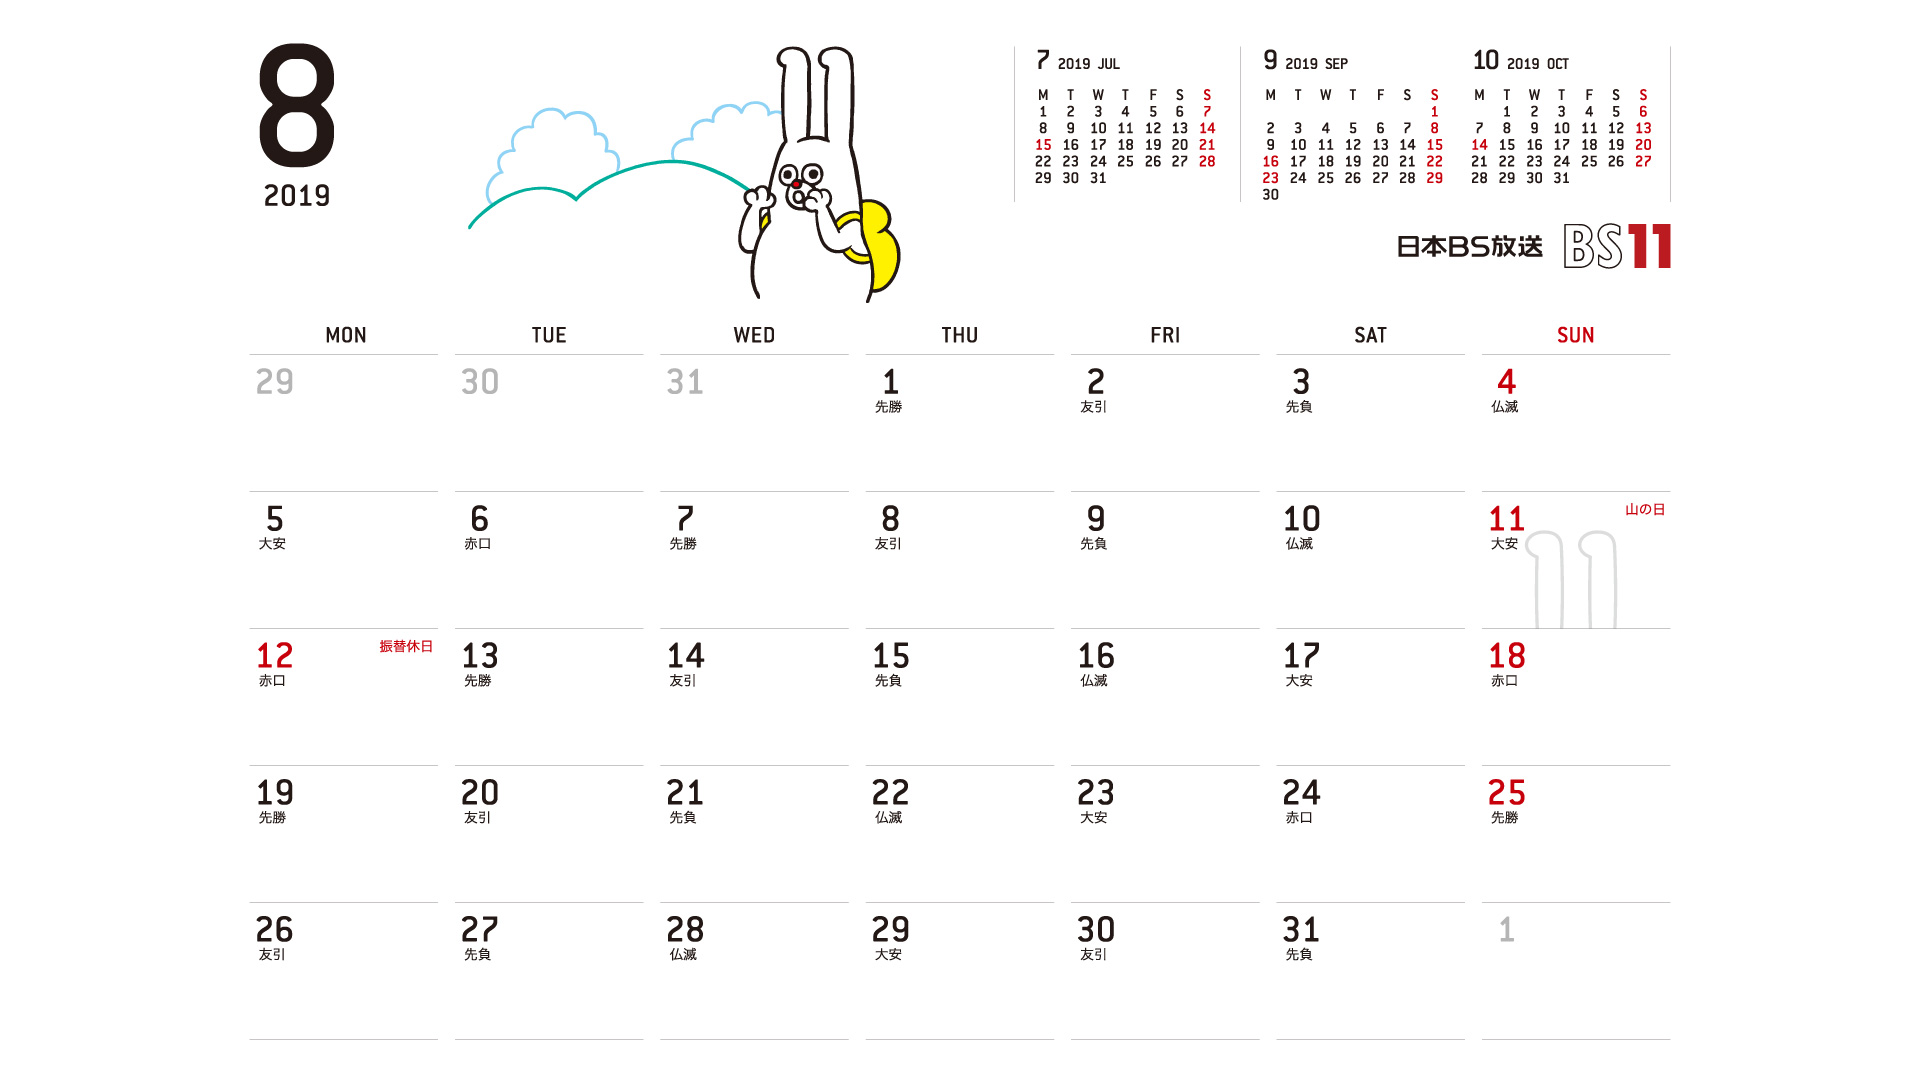 じゅういっちゃんのデジタルカレンダー2019年08月 Bs11 イレブン